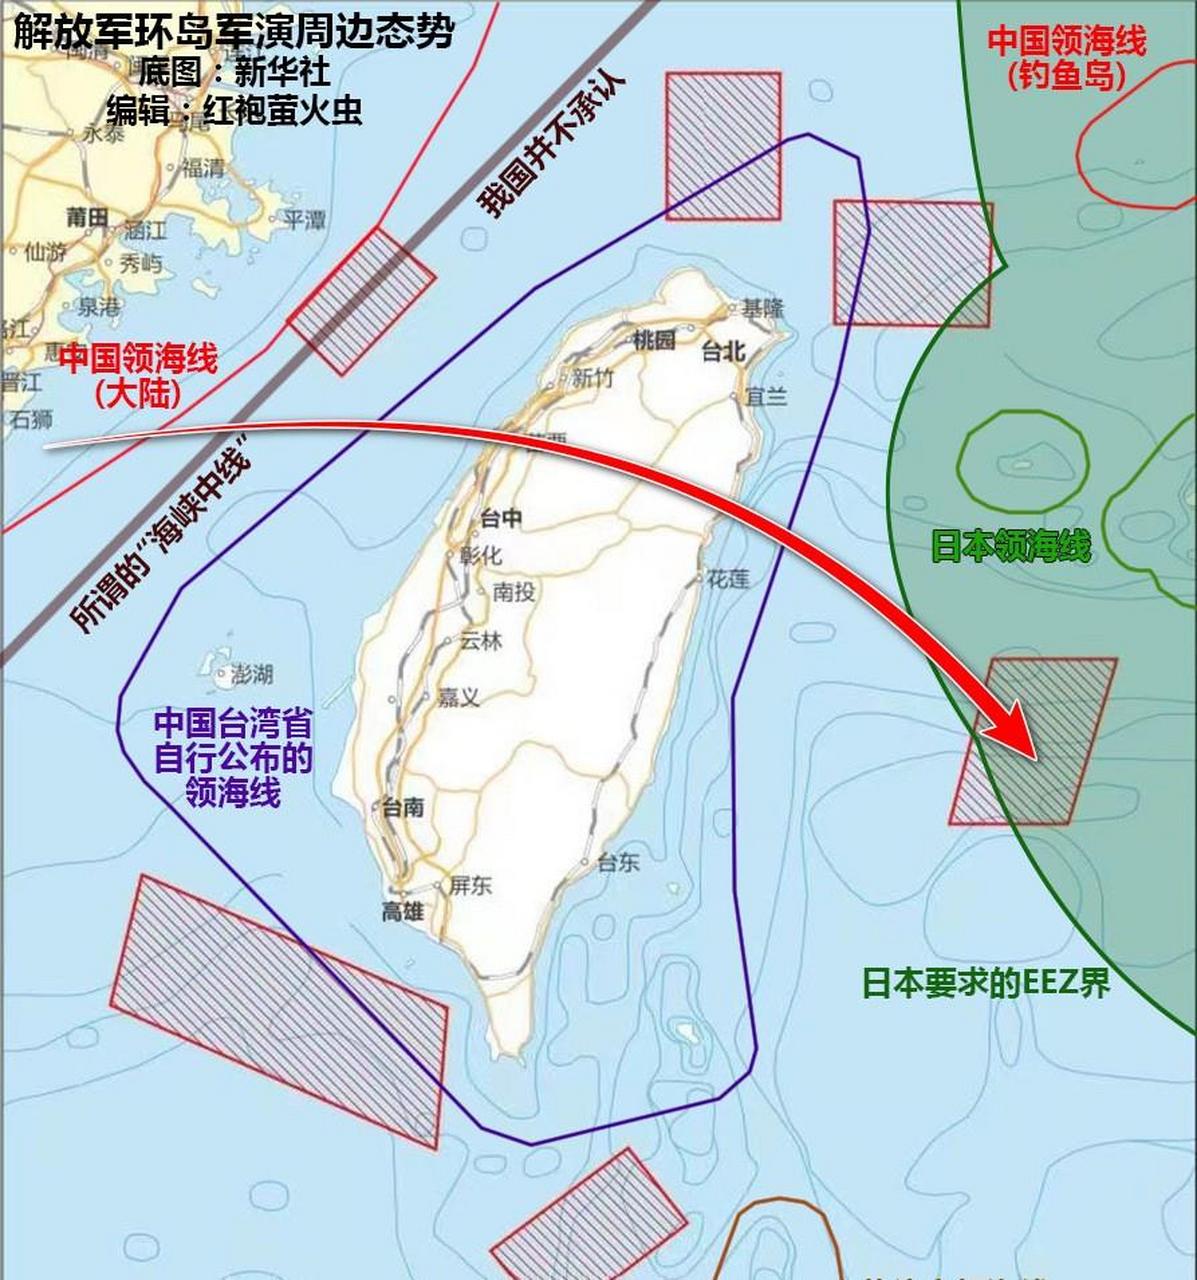 第二轮环岛军演来了,4月8日至10日,解放军东部战区将在台湾海峡和台岛